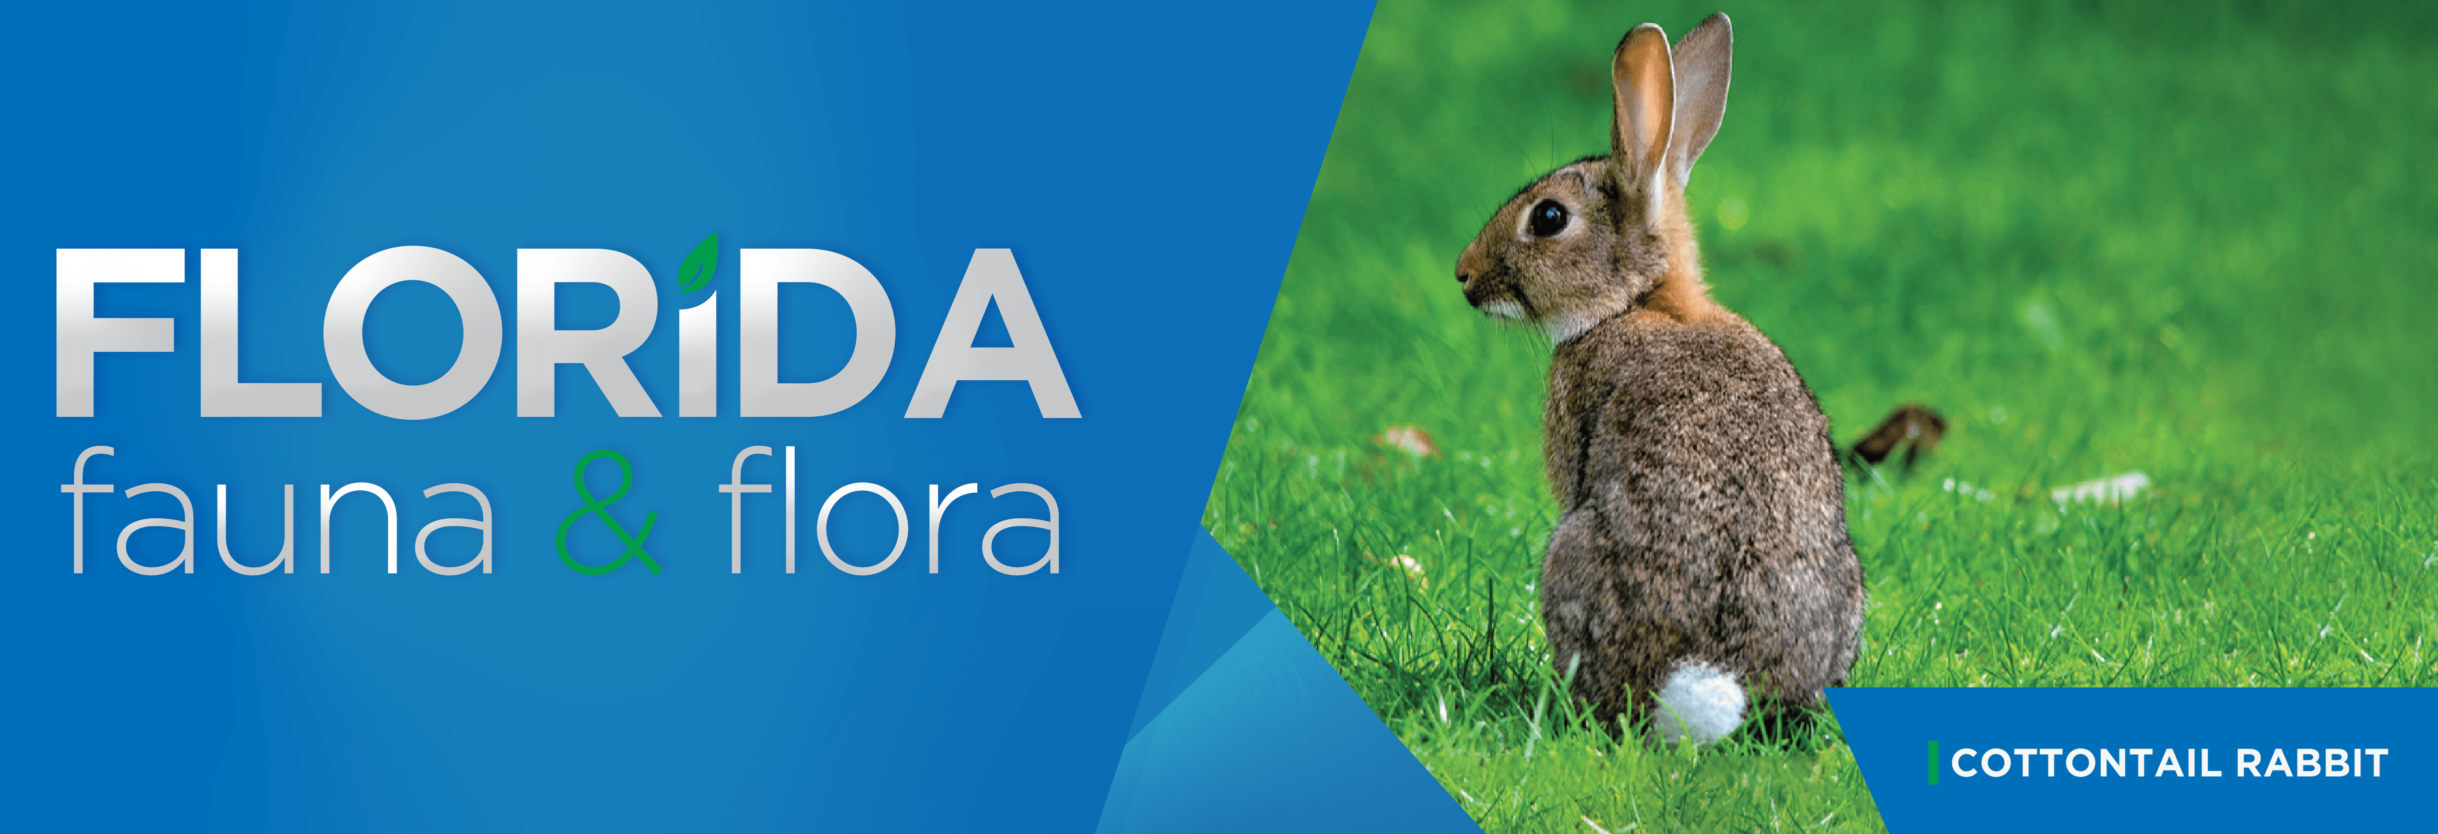 Florida Fauna & Flora – Cottontail Rabbit